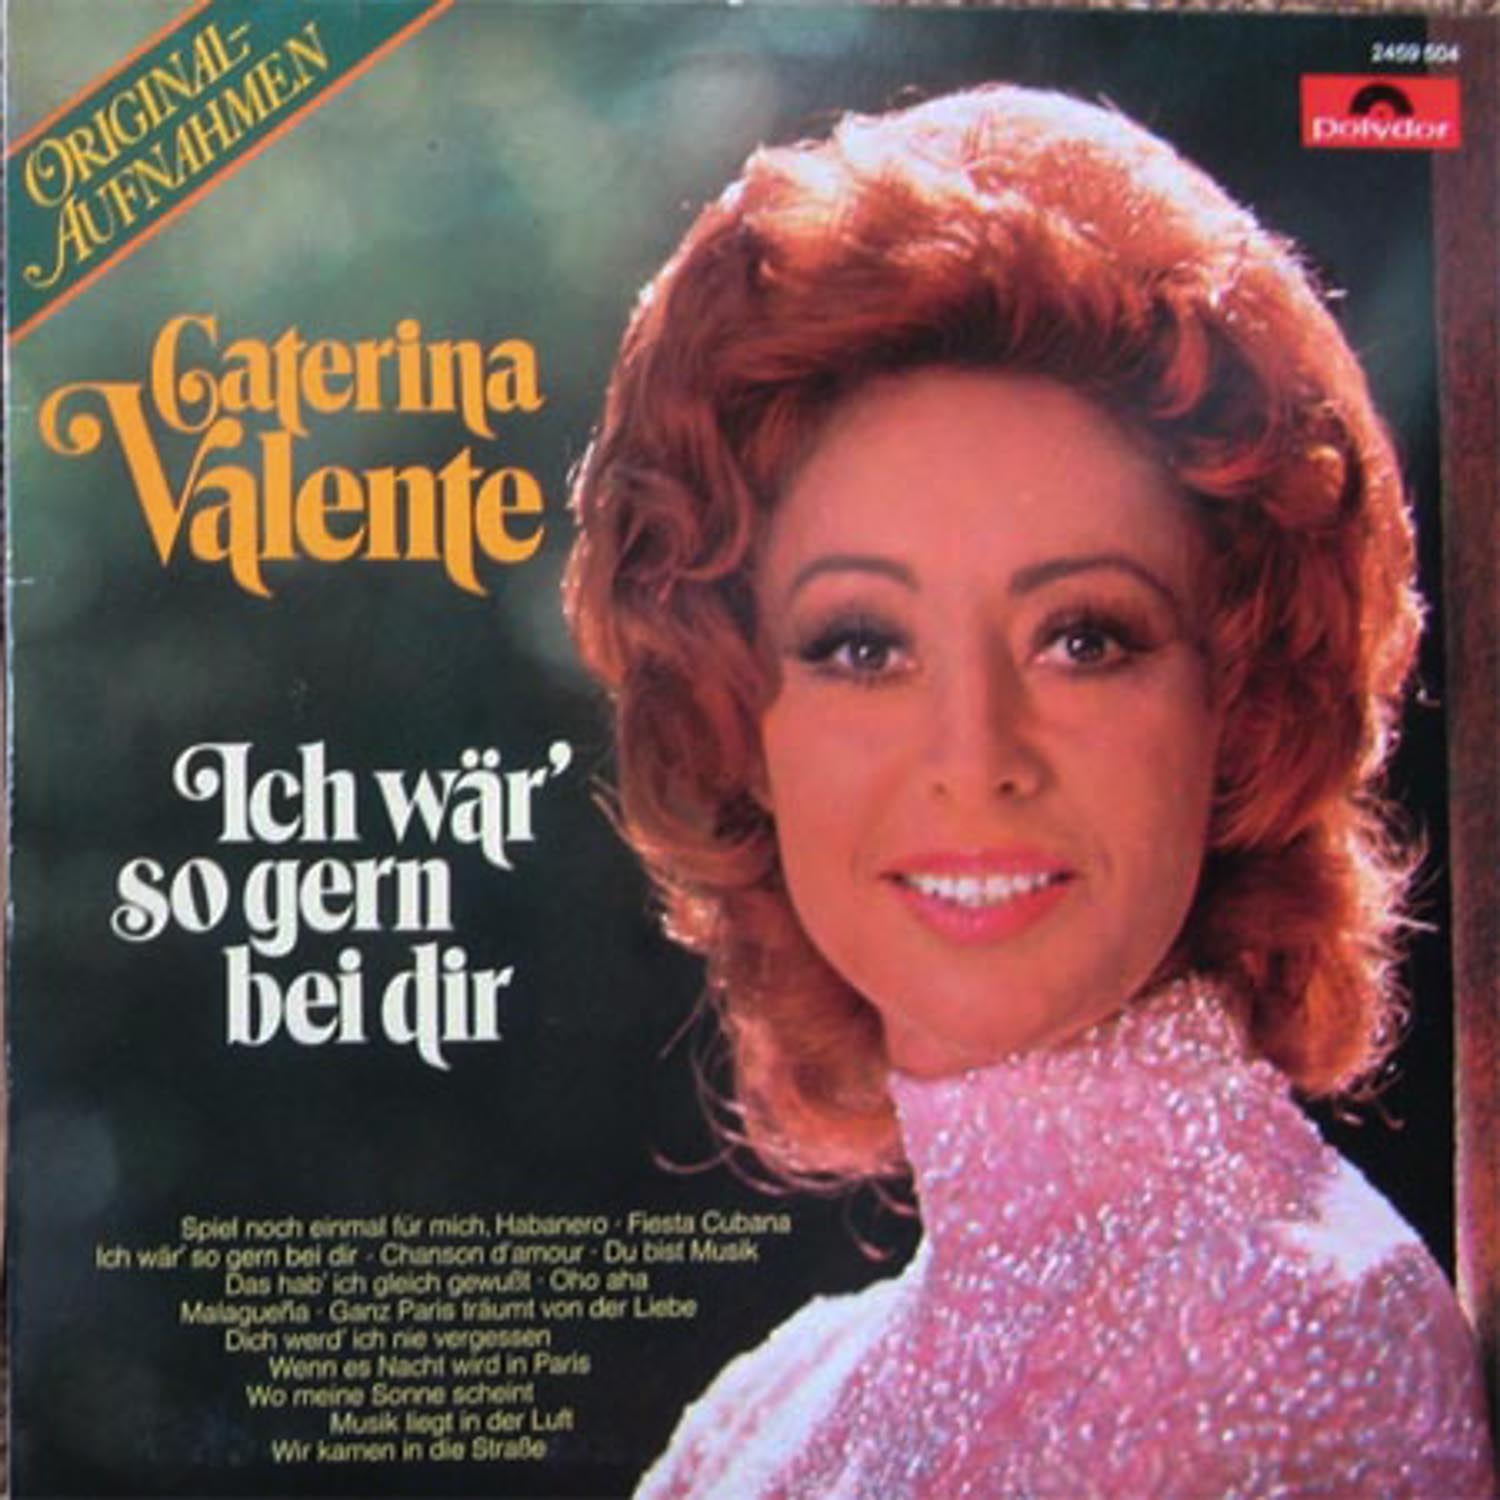 Caterina Valente  Ich wär' so gern bei dir (2459 504)  *LP 12'' (Vinyl)*. 